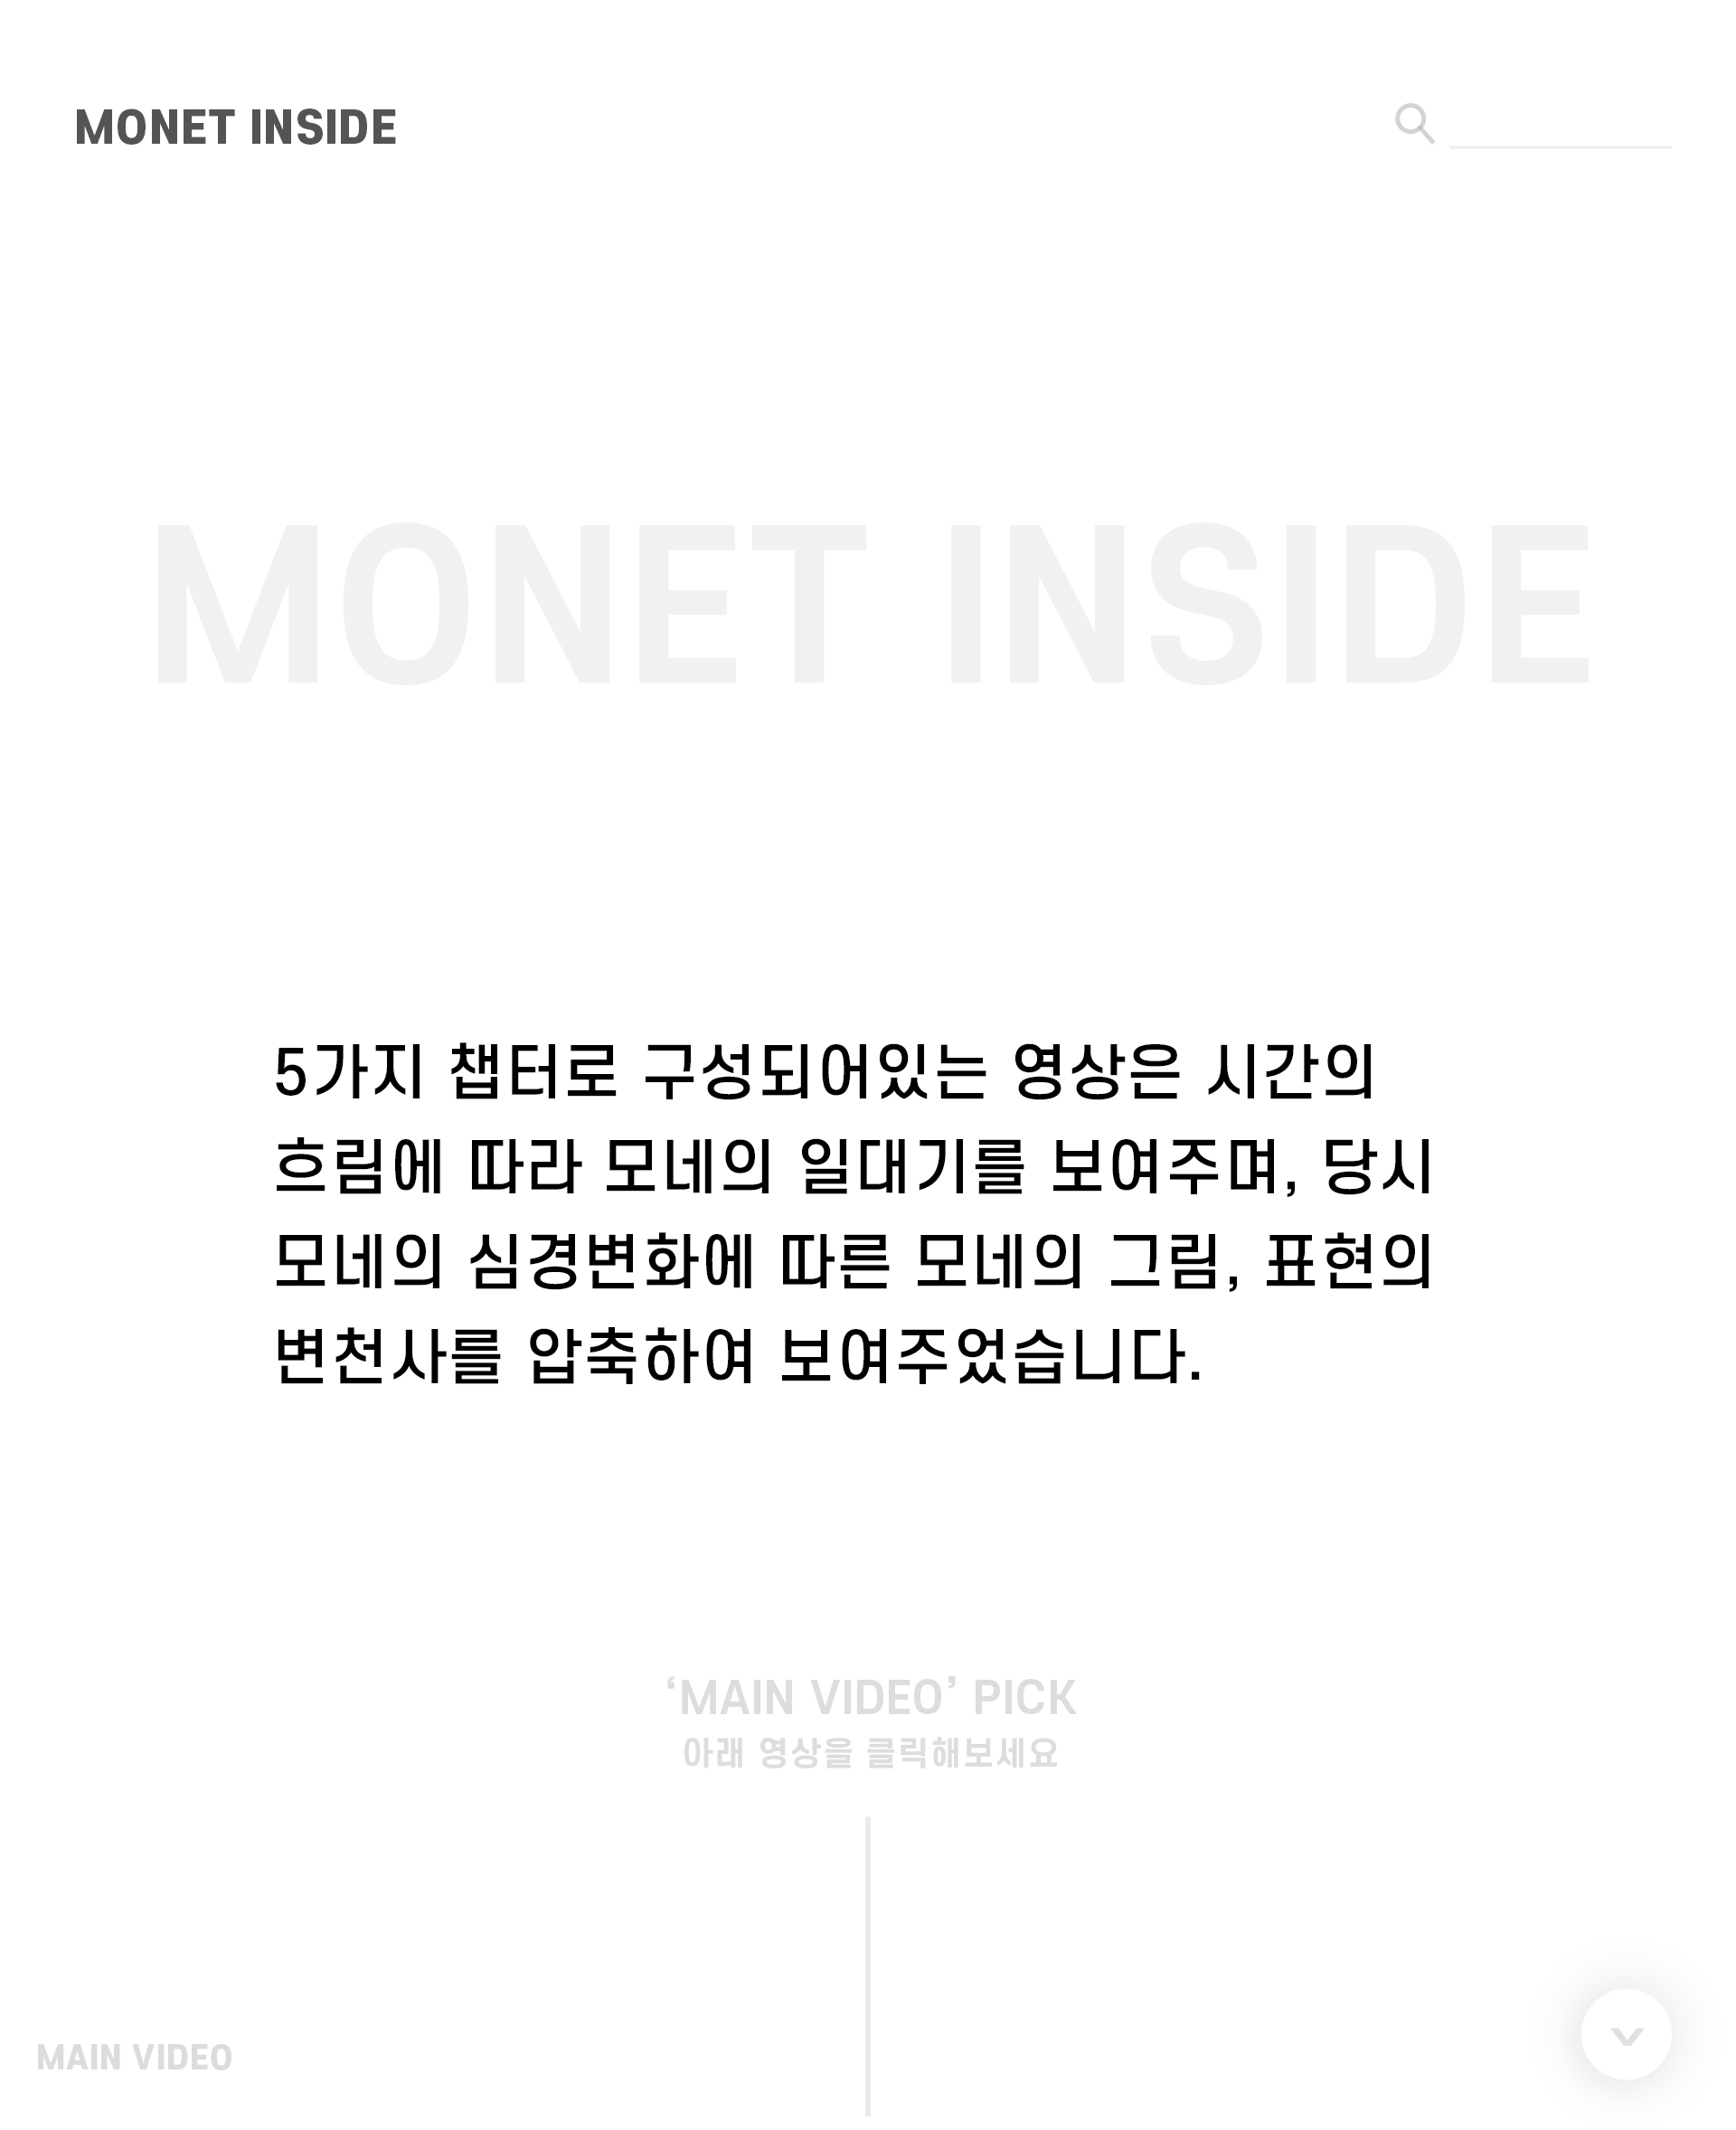 womm-모네인사이드-영상소개글-intro